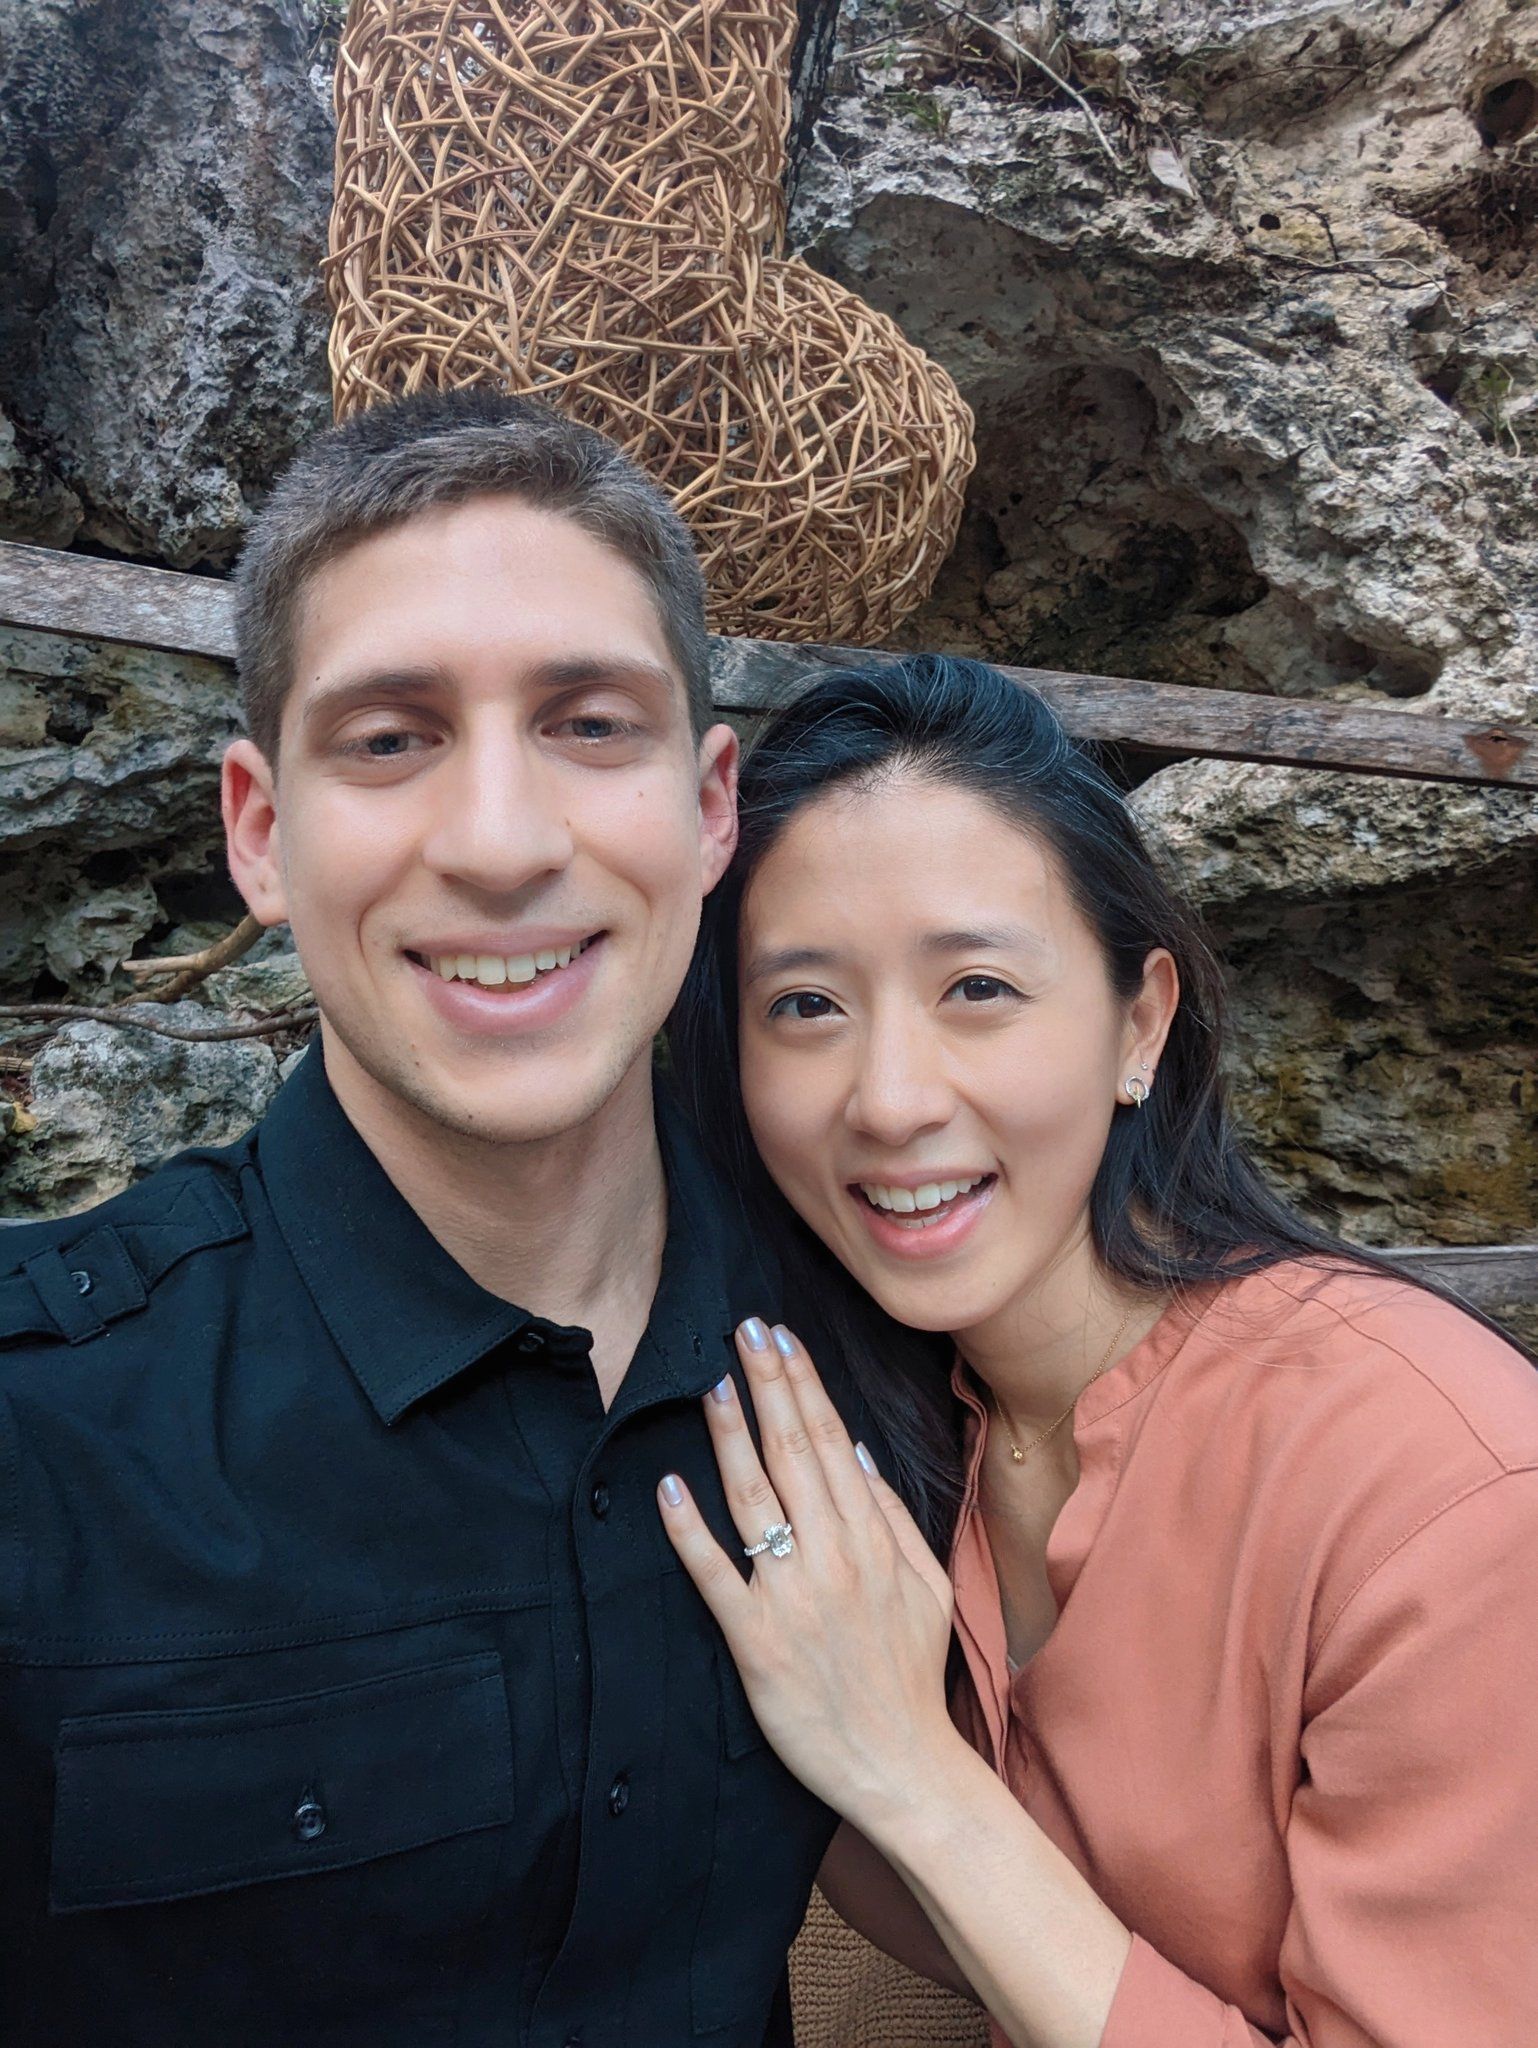 Таль Fly Айзик и Эвани Чанг объявили о помолвке. Источник фото: социальные сети пары